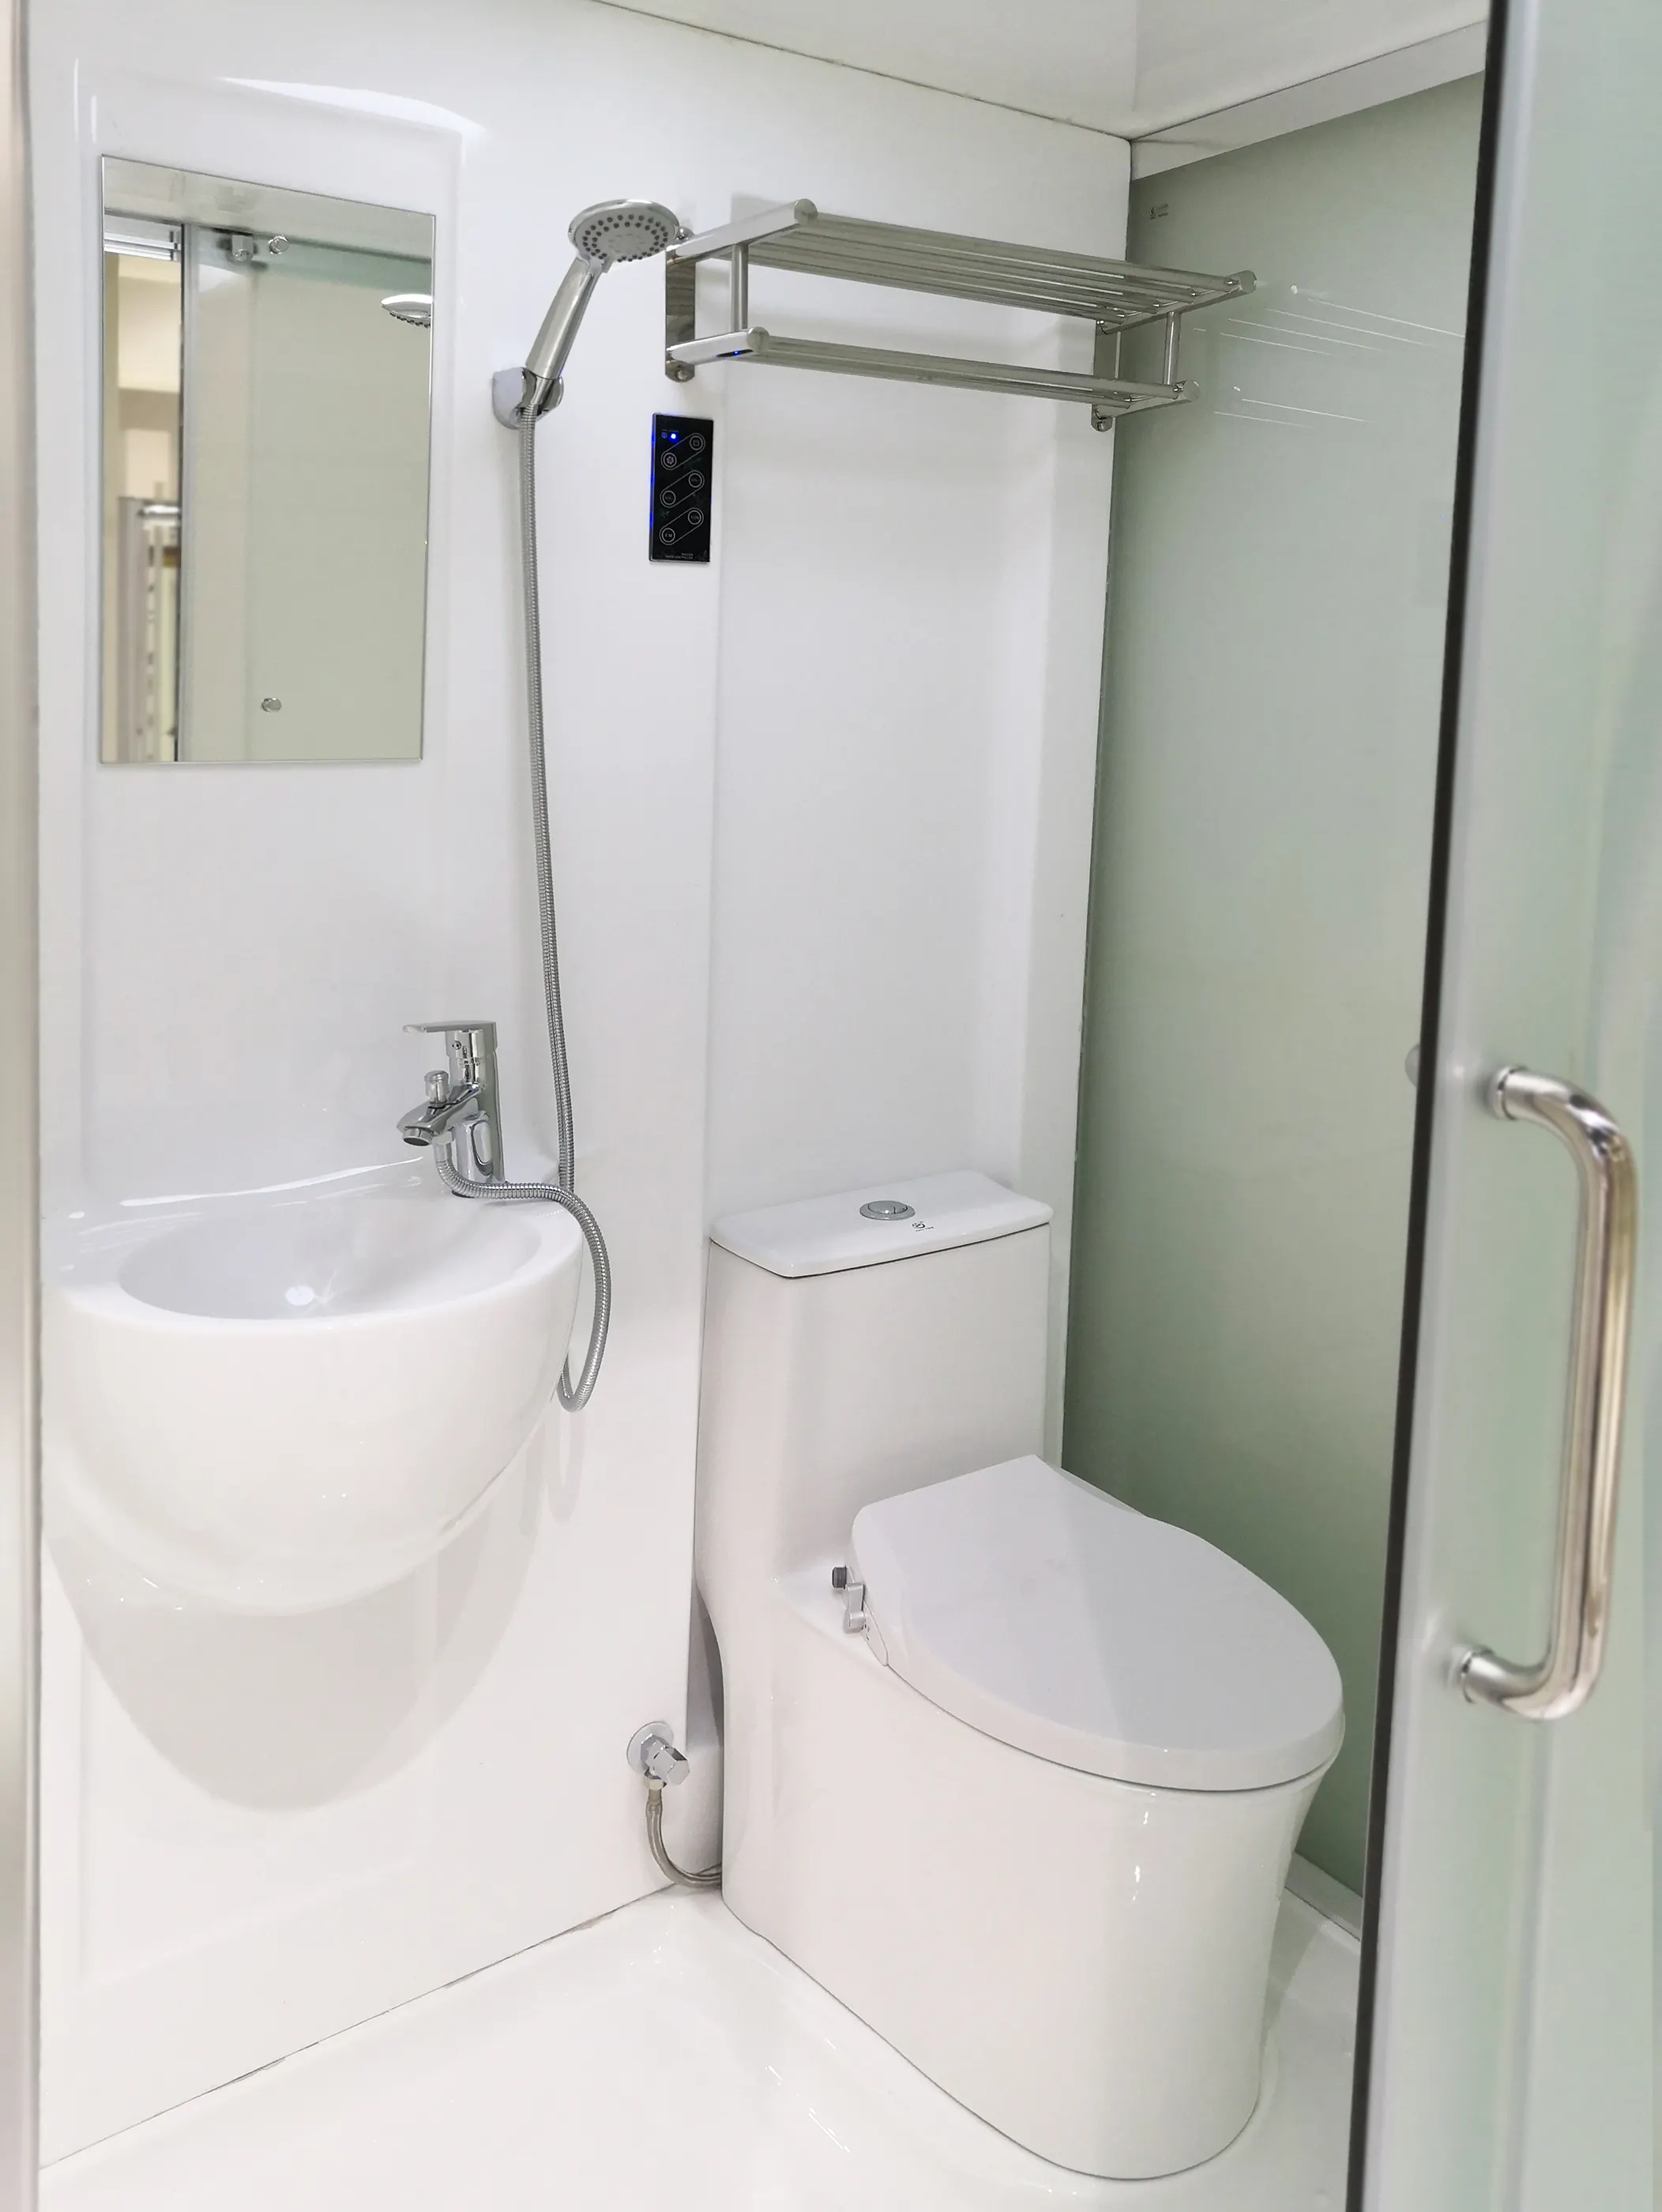 غرفة الاستحمام الجاهزة الكل في واحد المرحاض غرفة الاستحمام سهلة التركيب غرفة الاستحمام وحدة الحمام الجاهزة